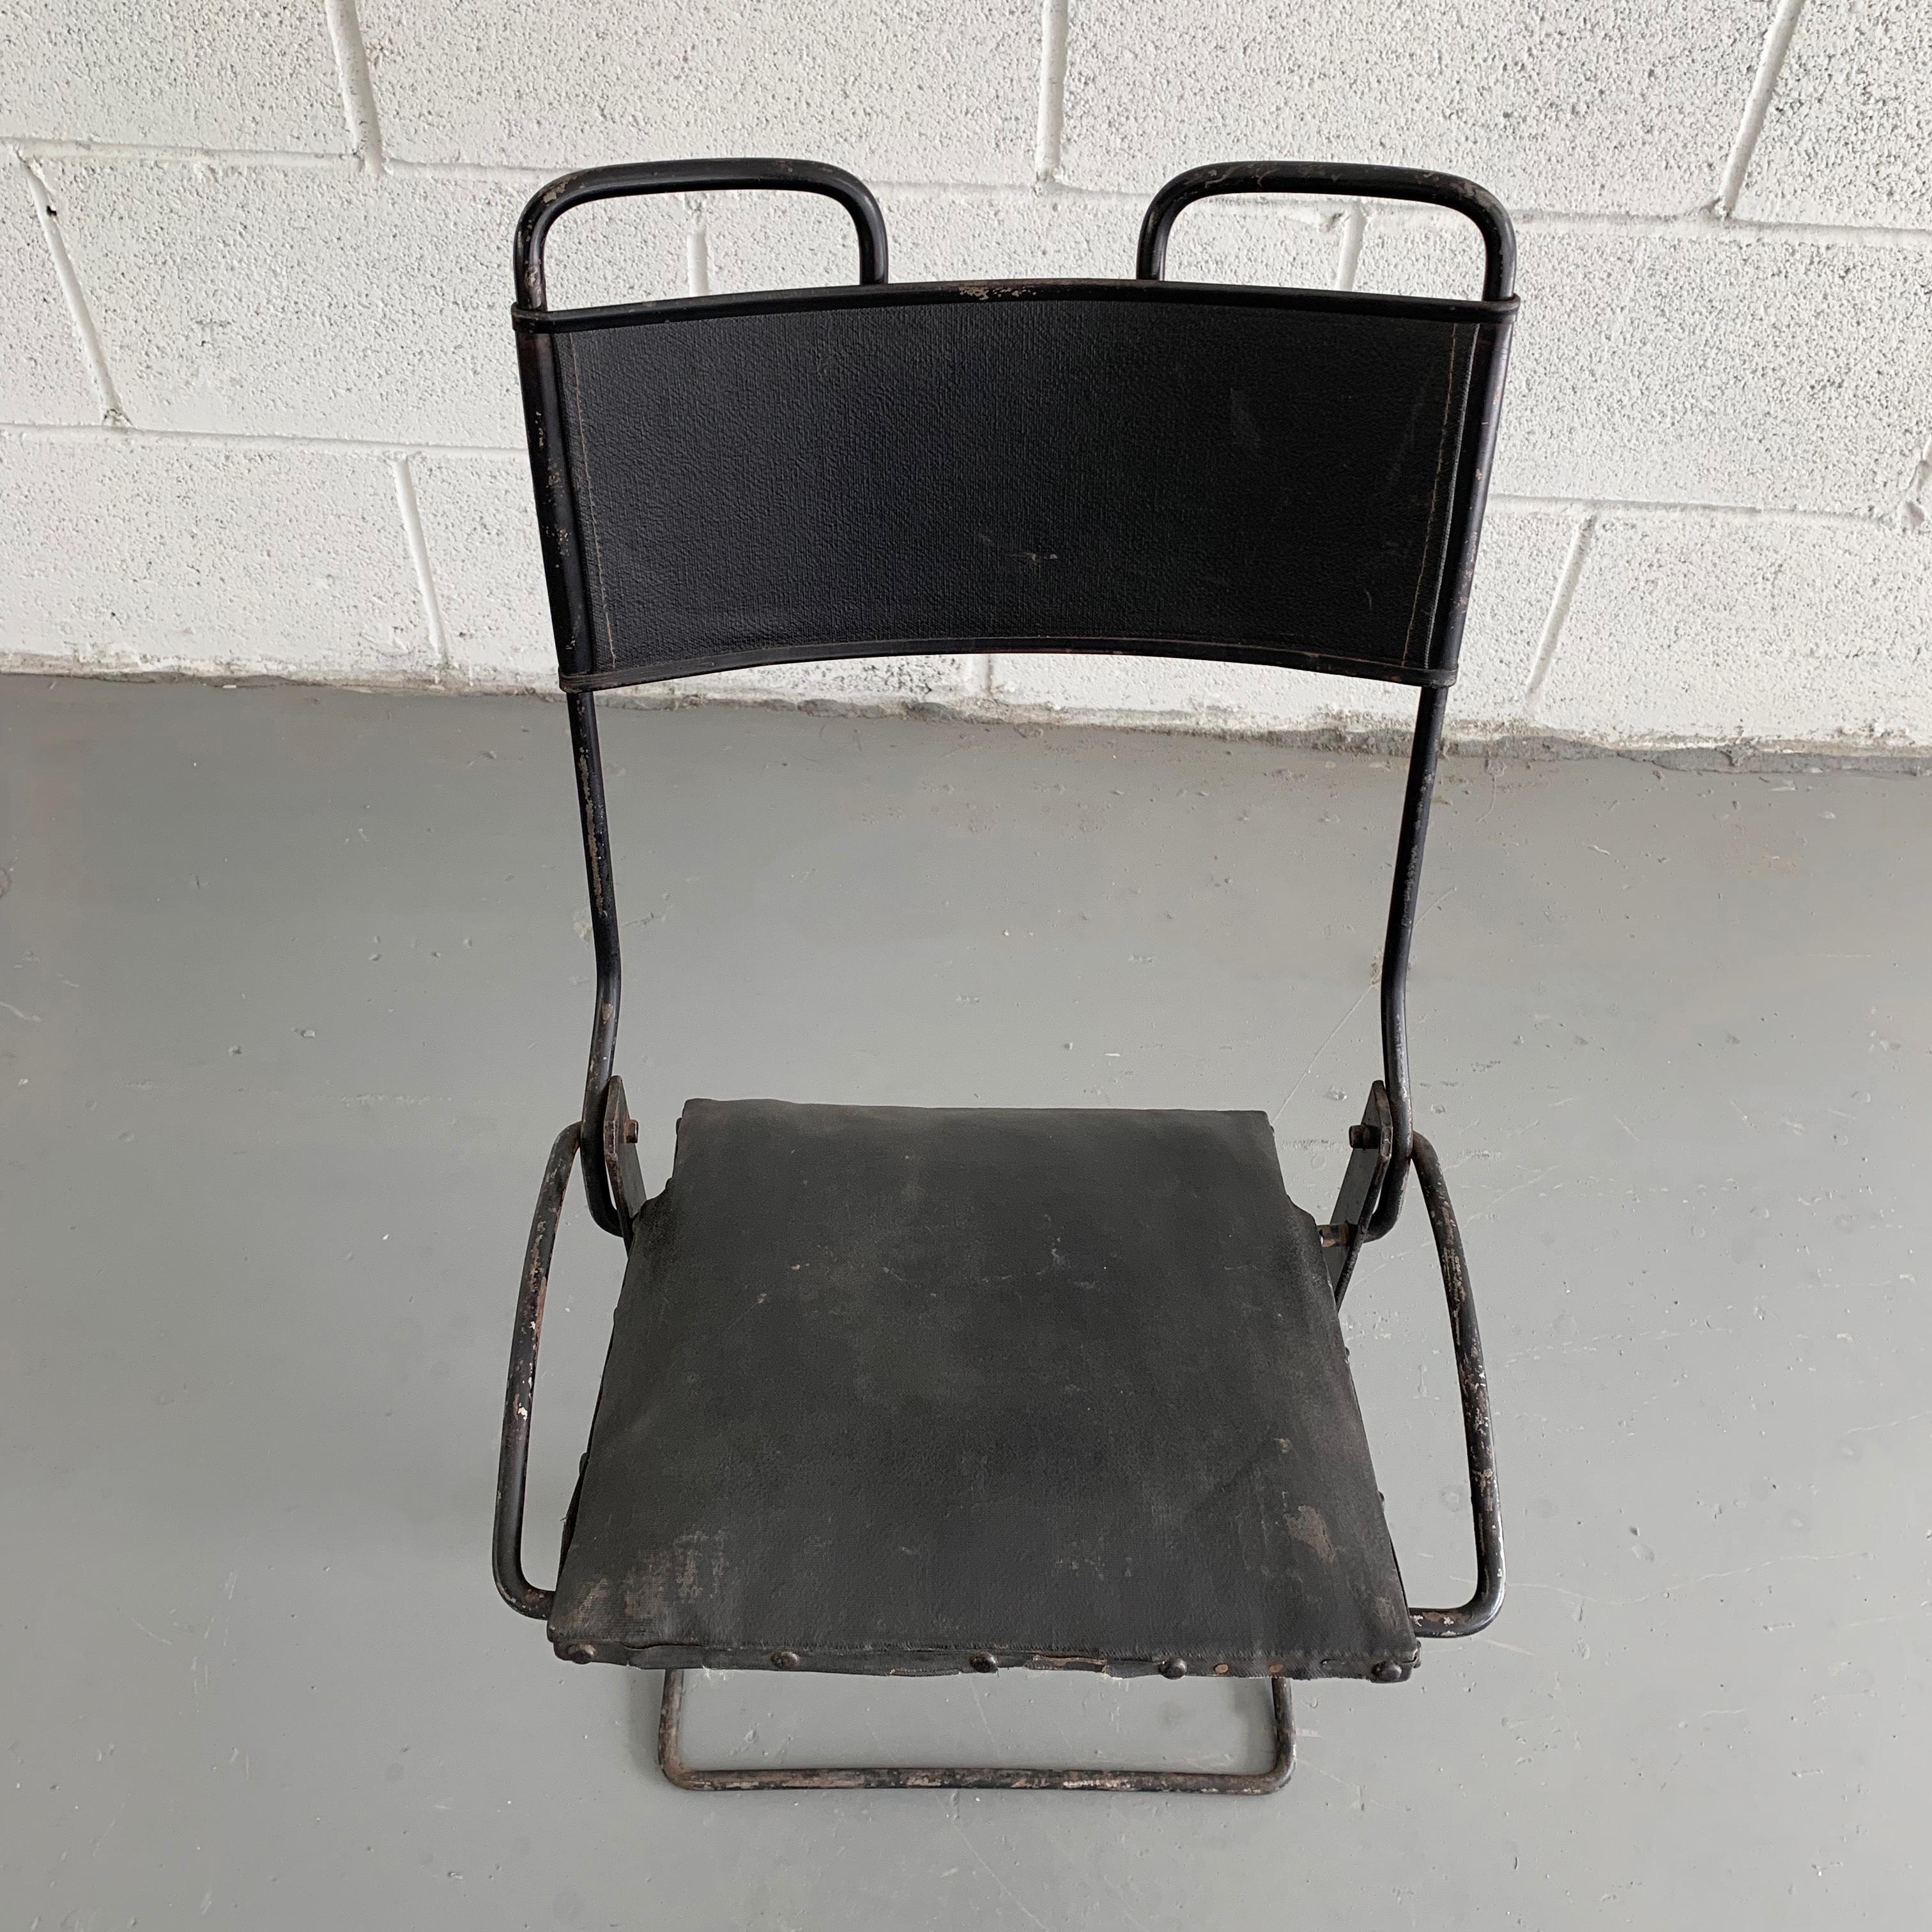 Chaise d'enfant ancienne pour une poussette ou une voiture ancienne, avec un cadre en fonte et un siège et un dossier en vinyle pliants. Toute la patine d'origine.